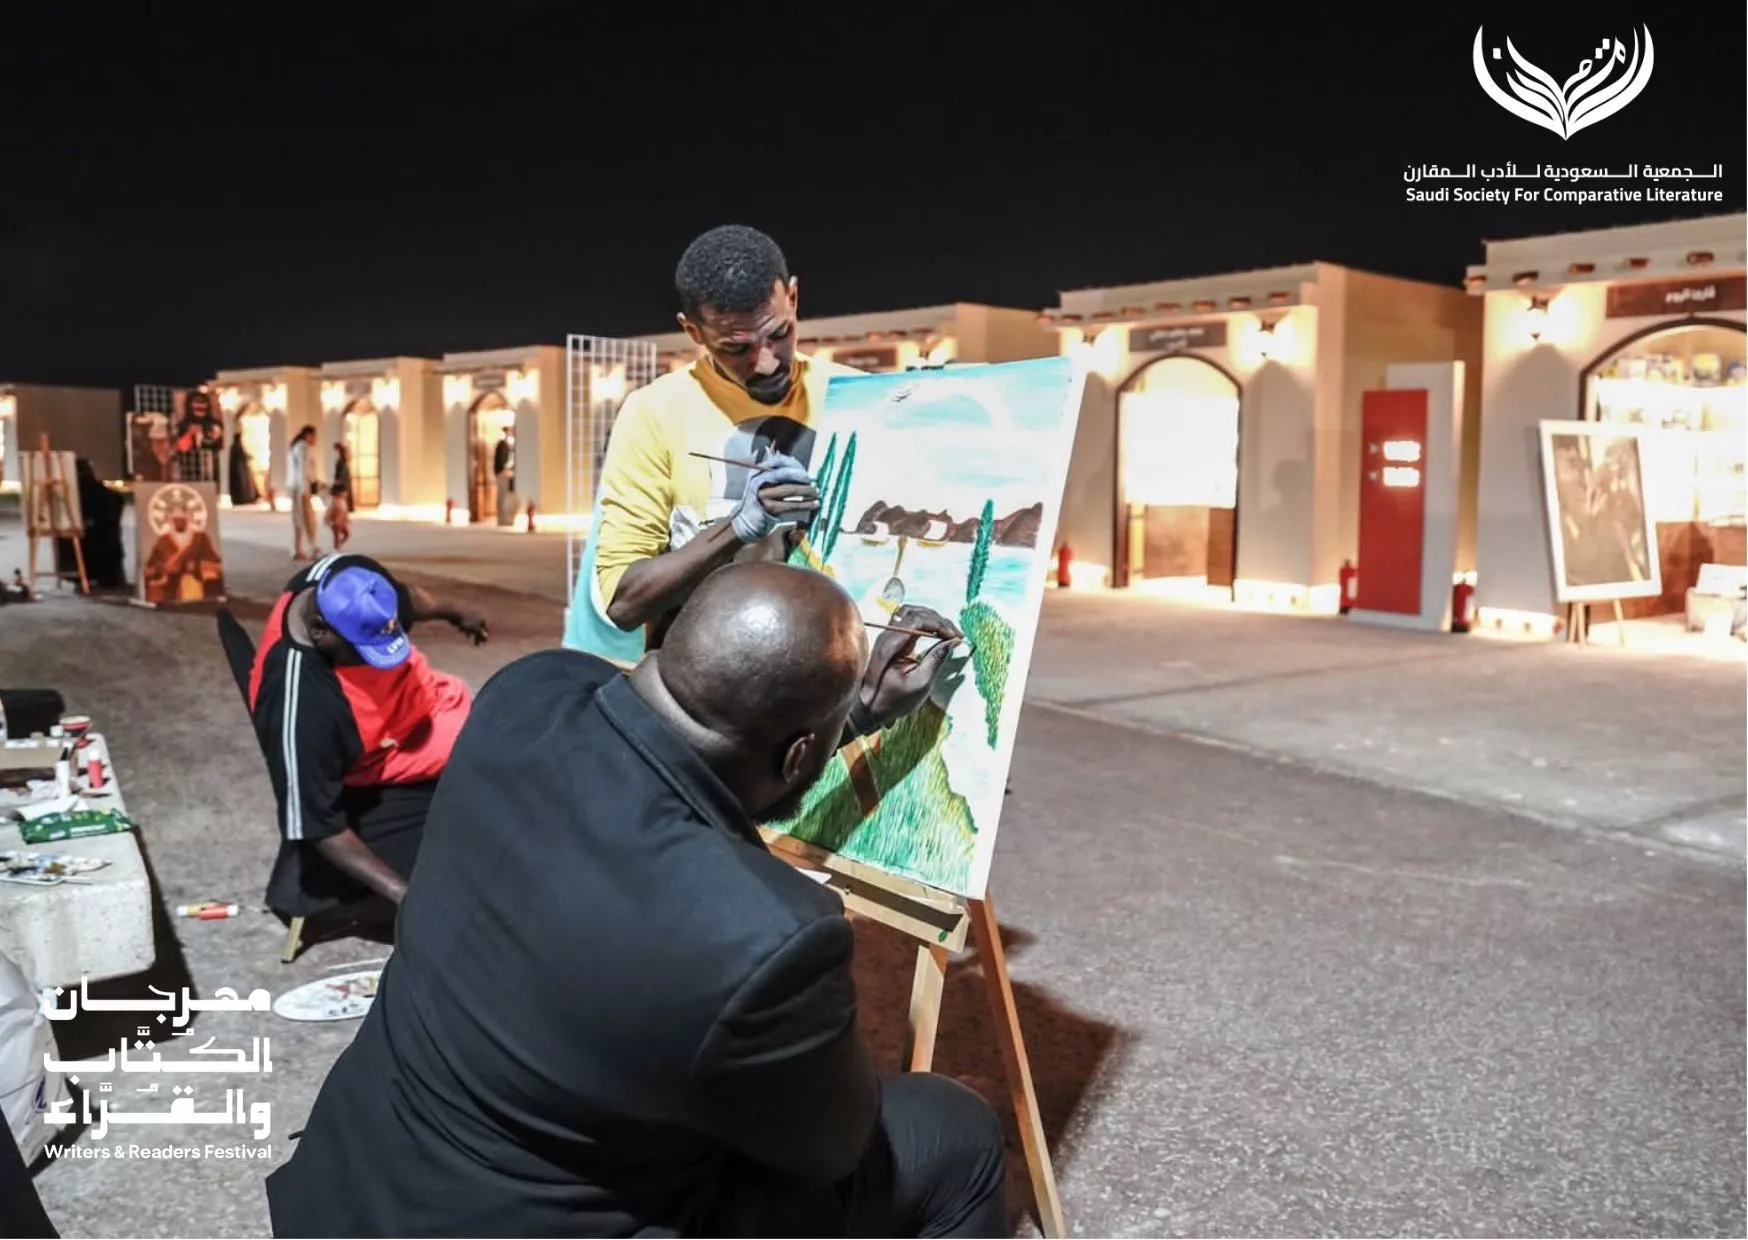 فعاليات مهرجان الكتاب والقراء في المنطقة الشرقية في السعودية